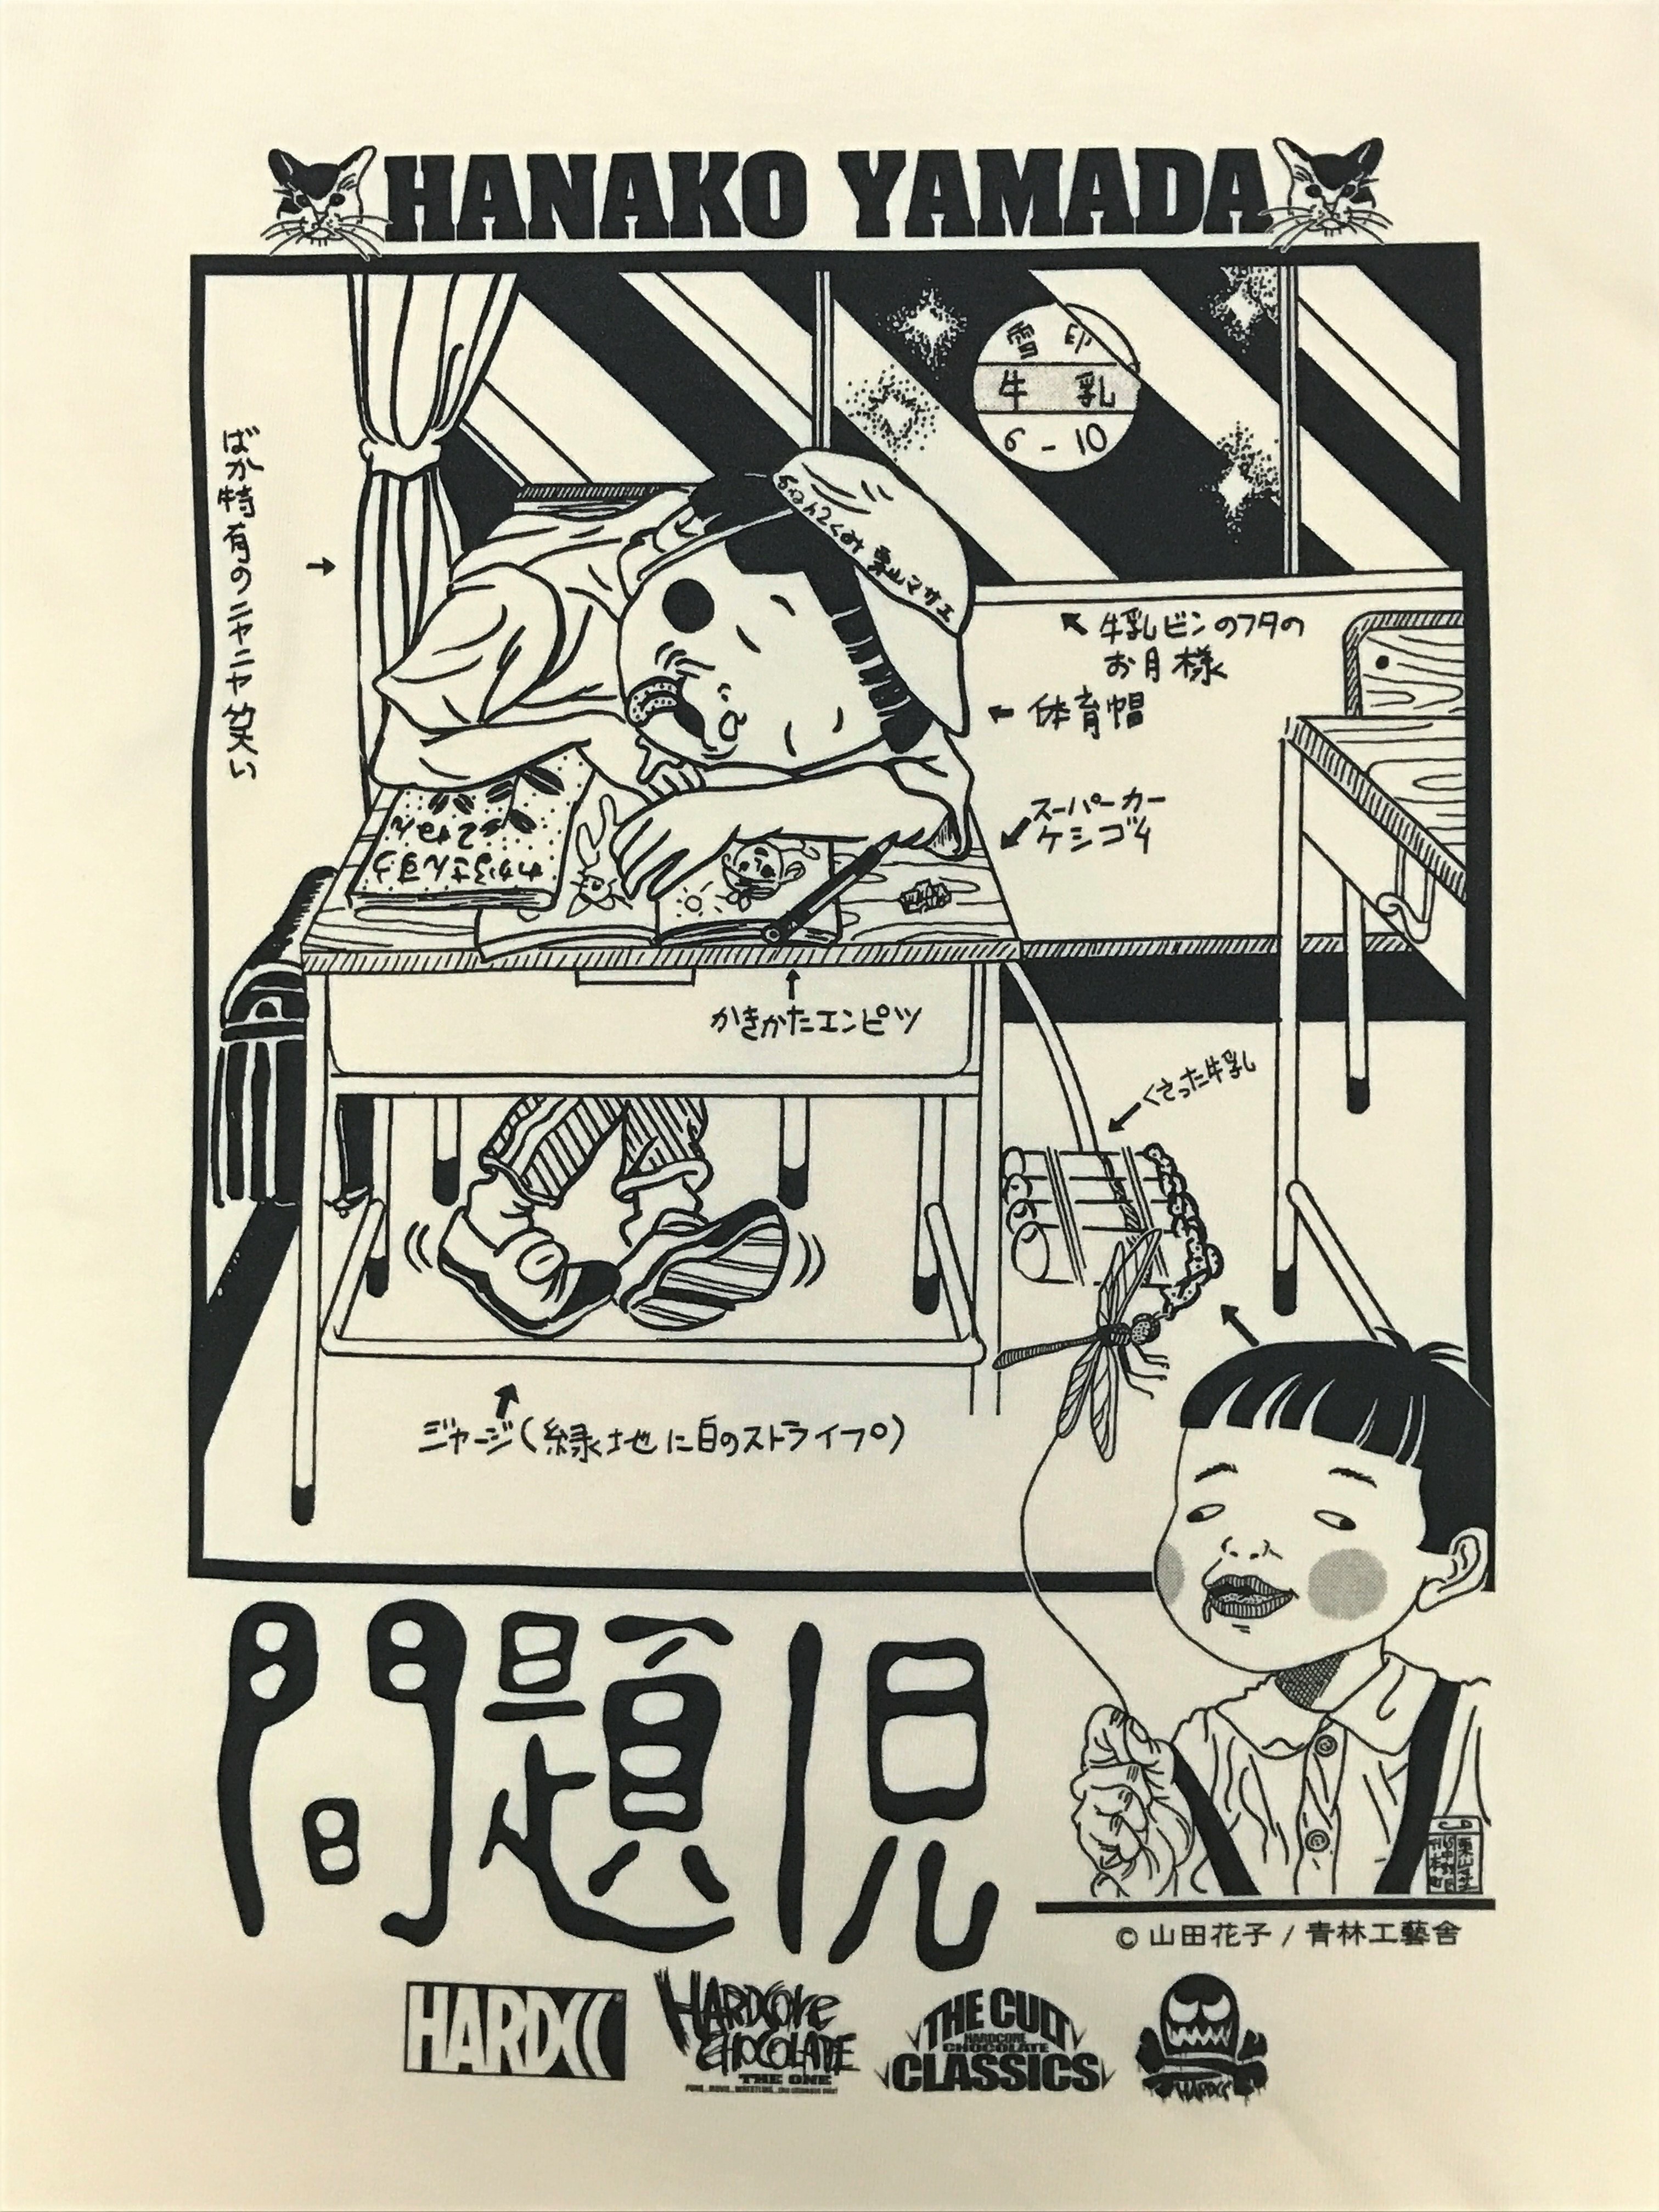 24歳の若さで自ら命を絶った伝説の漫画家 山田 花子 作品 マリアの肛門 問題児 とコアチョコのコラボがついに実現 有限会社ハードコアチョコレートのプレスリリース